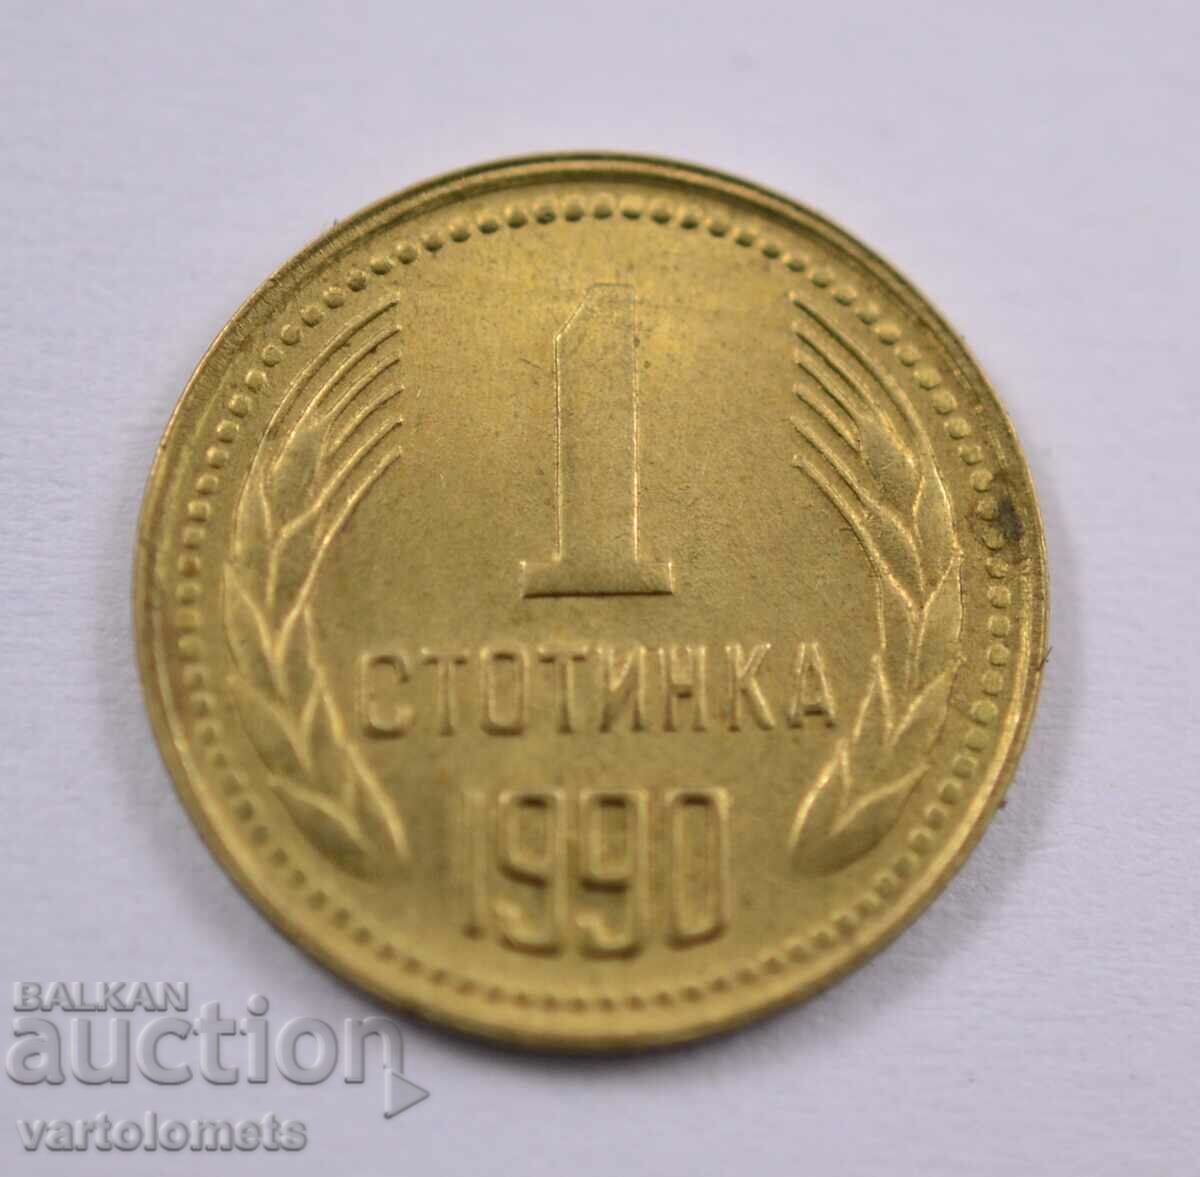 1 cent 1990 - Bulgaria